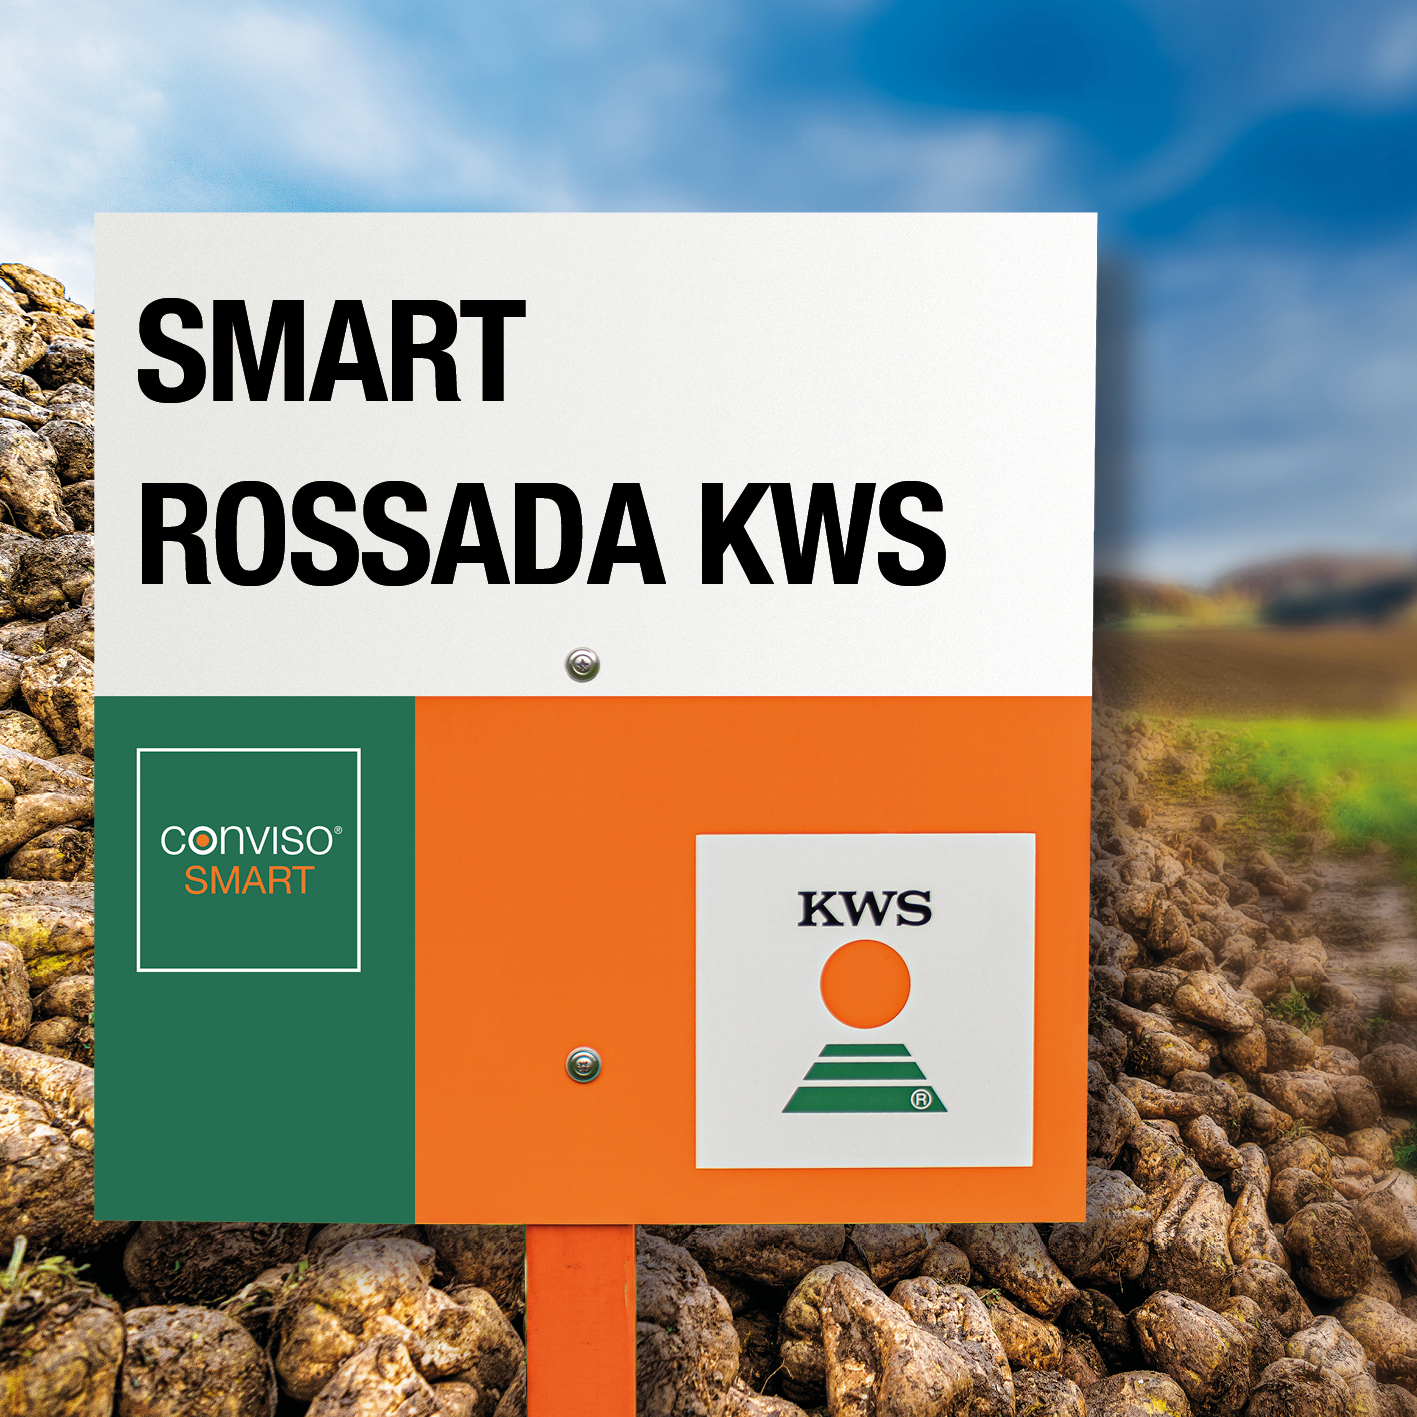 SMART-ROSSADA-KWS.jpg